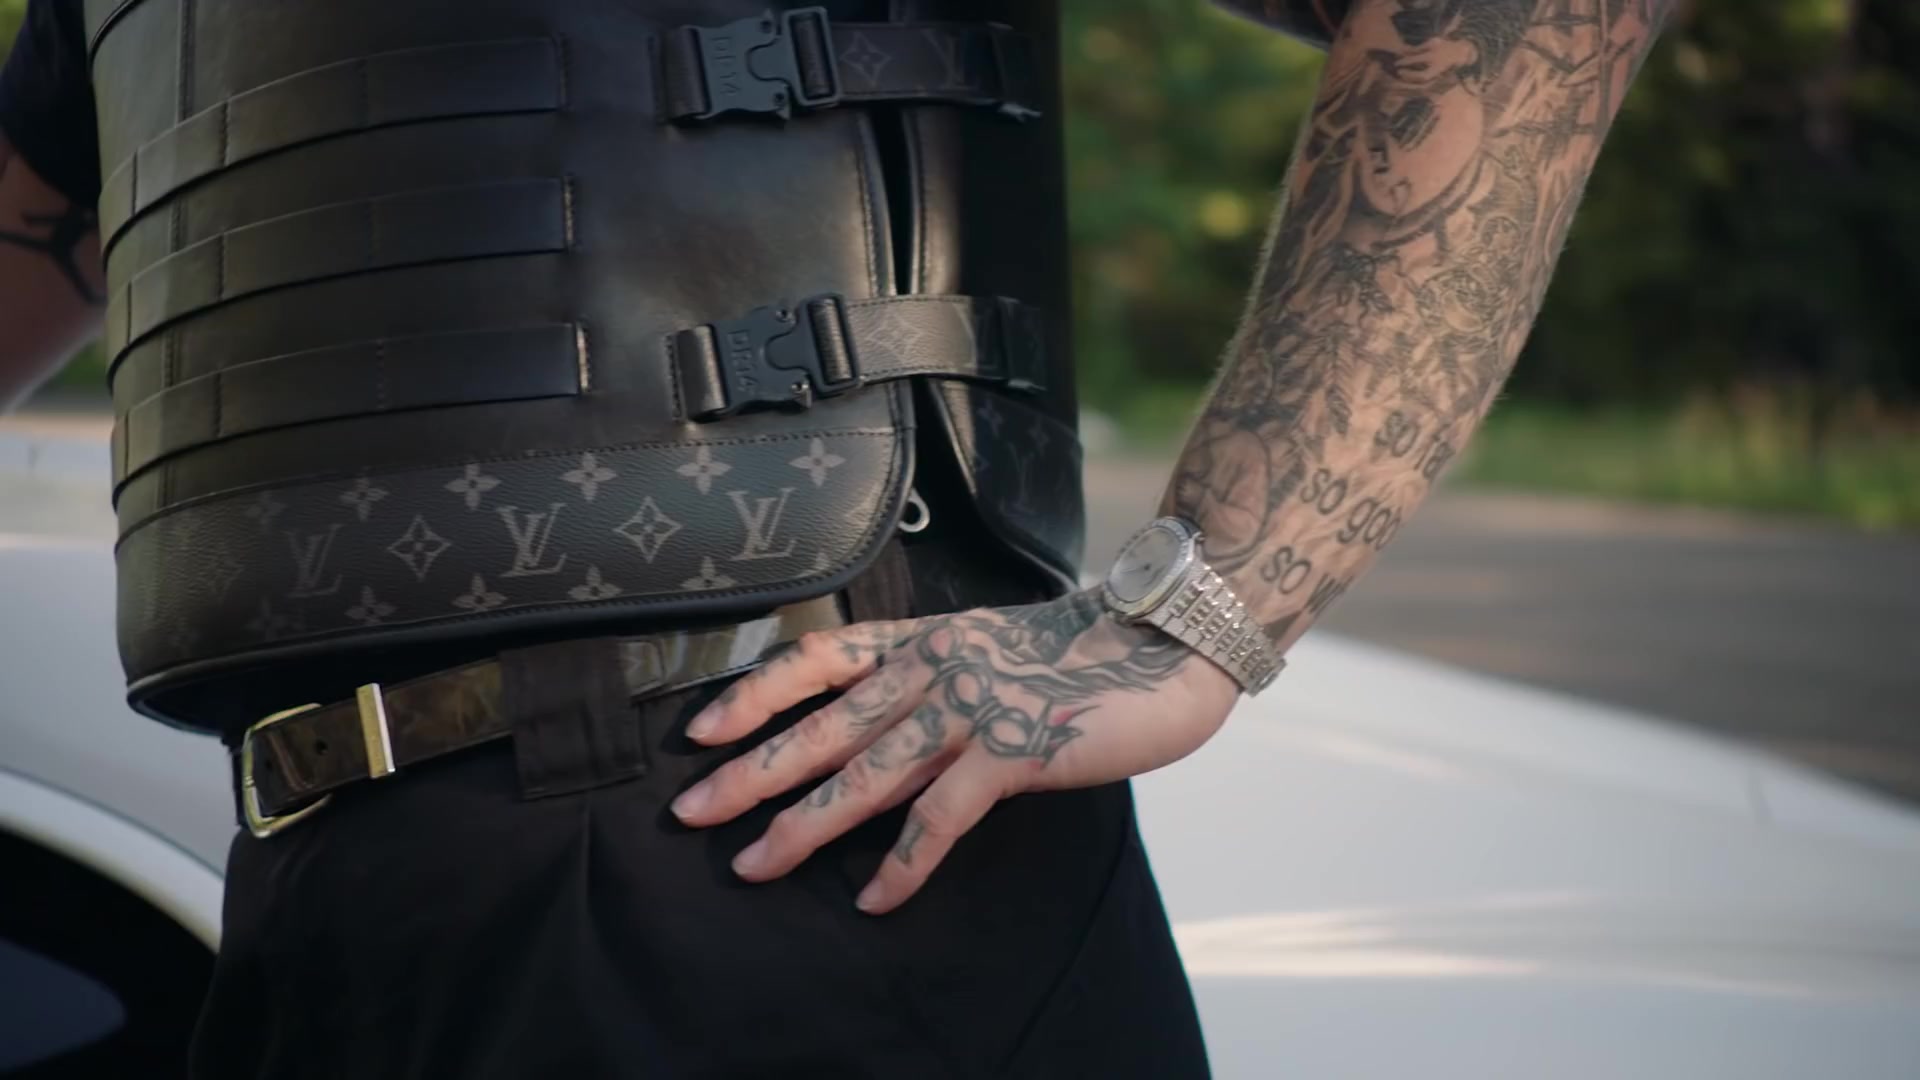 Louis Vuitton tactical armored vest. - Imgur